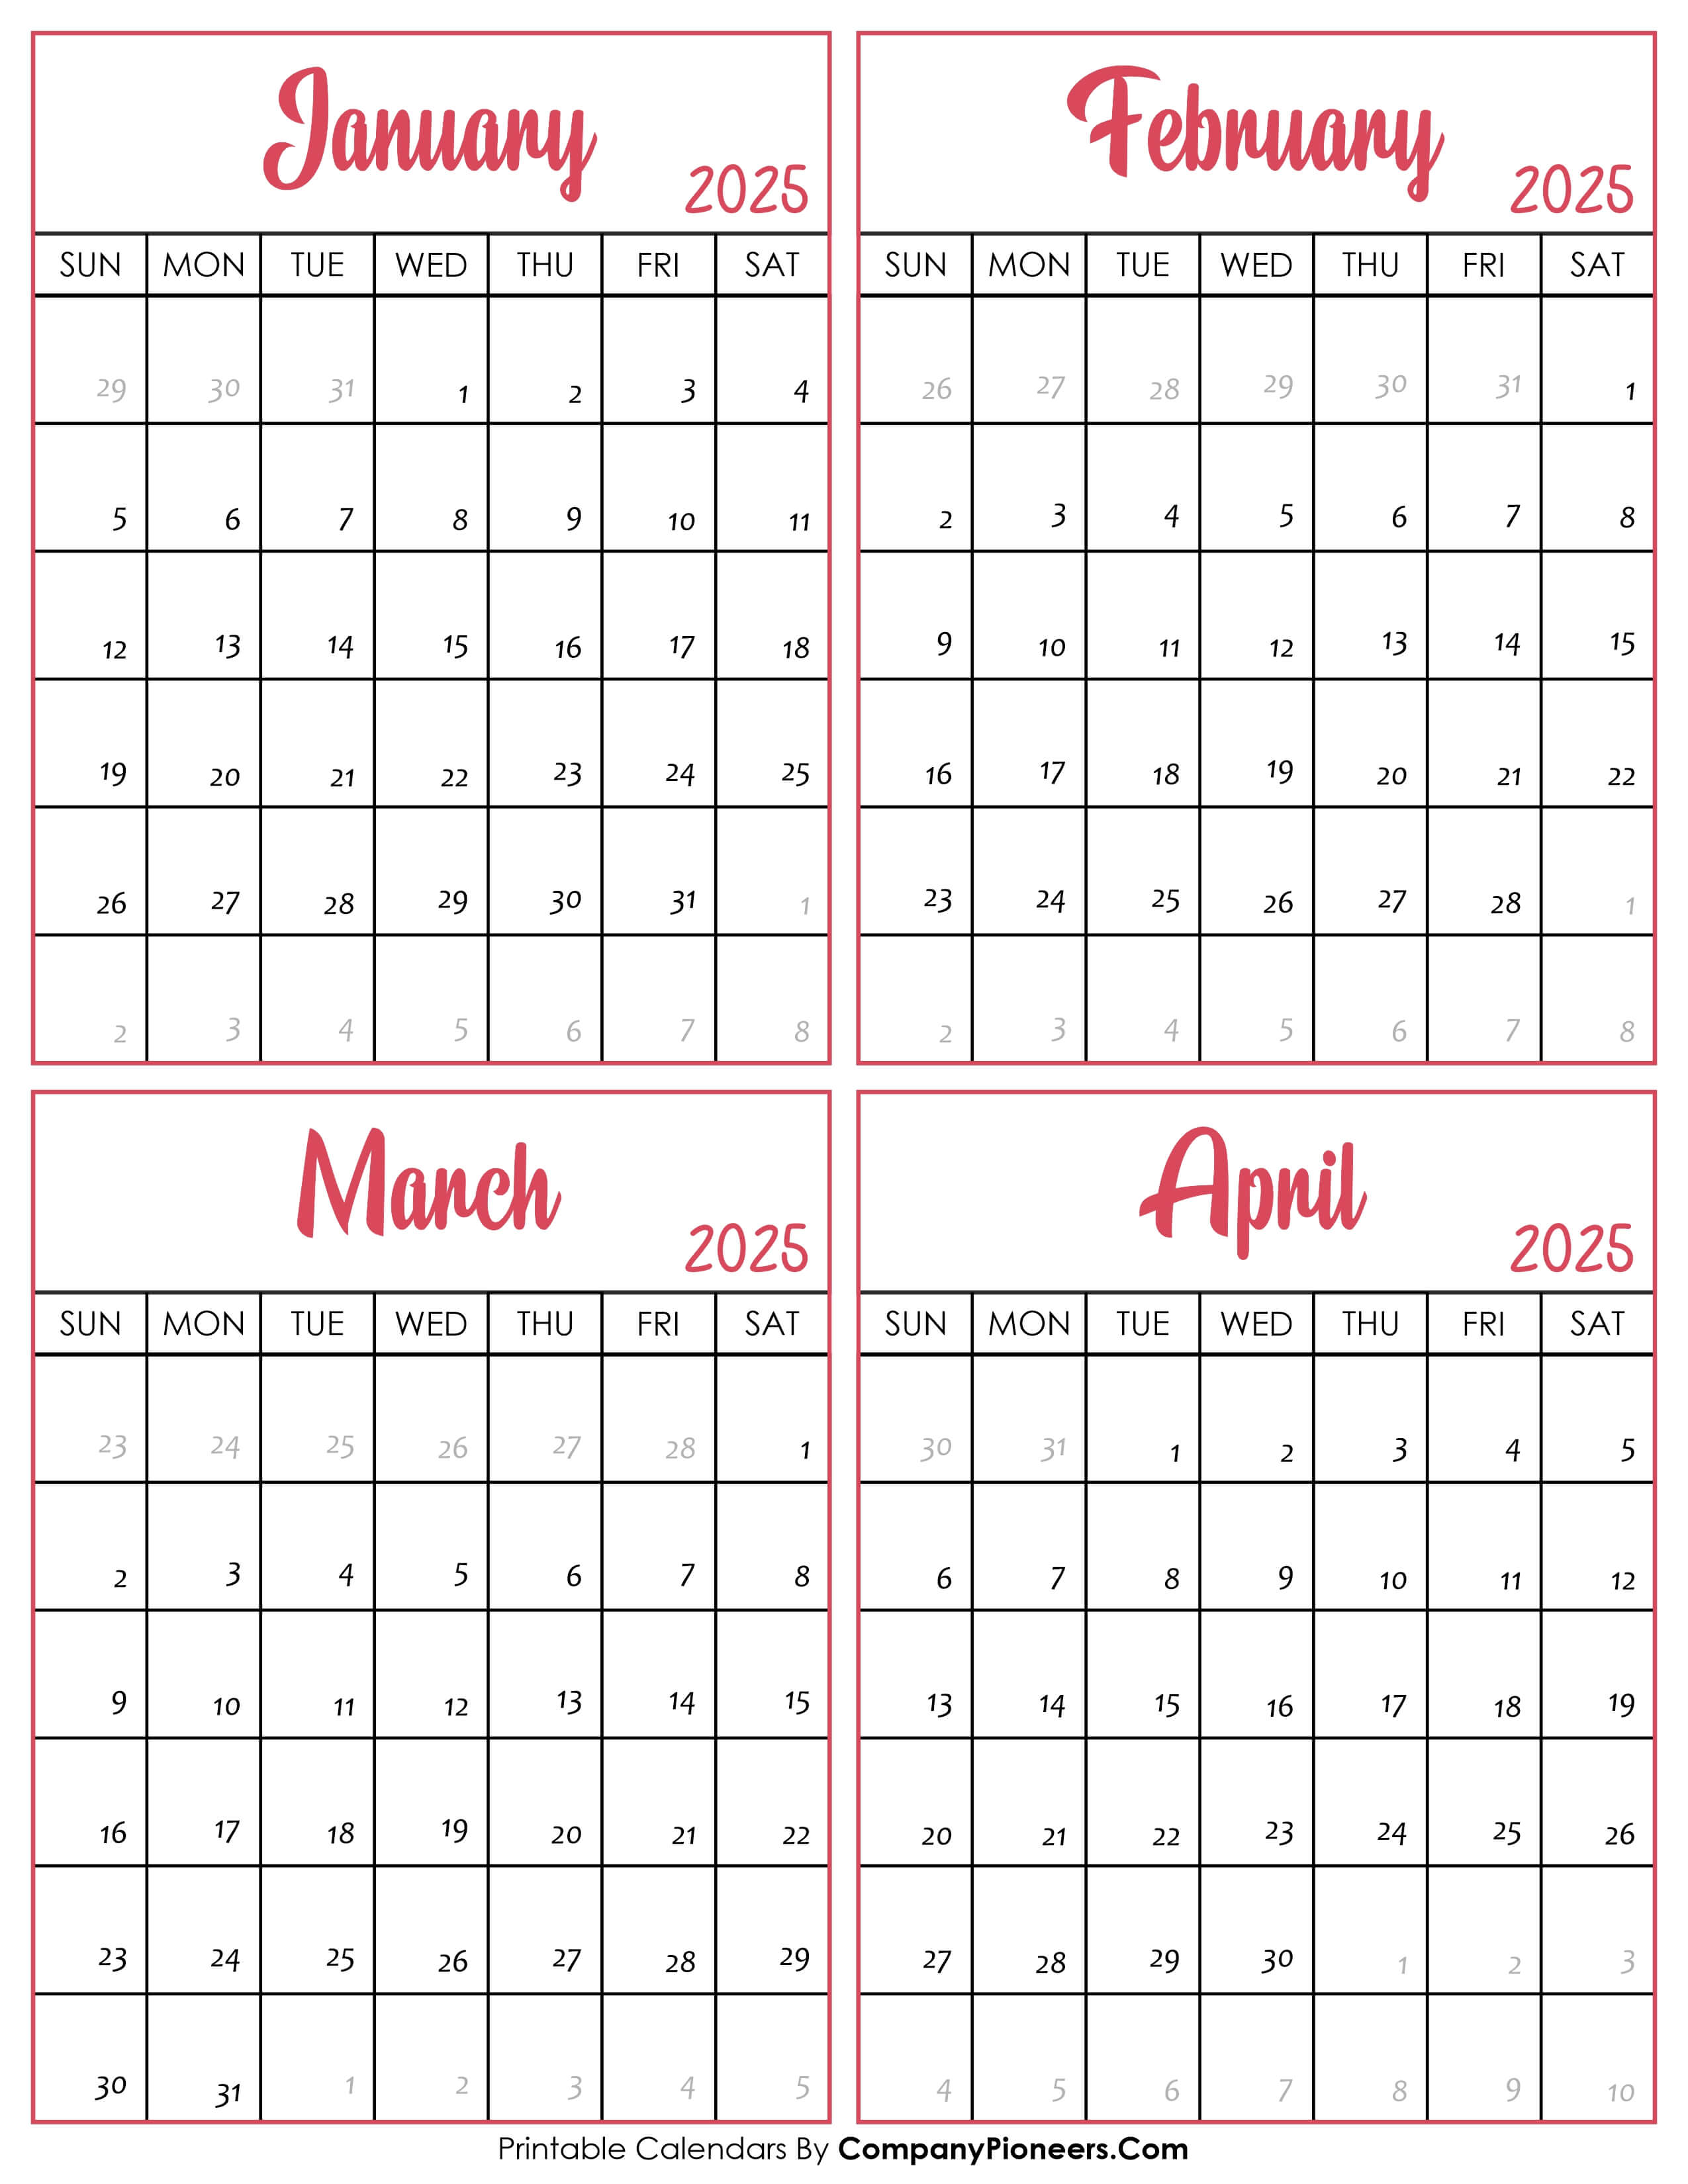 Calendar January to April 2025